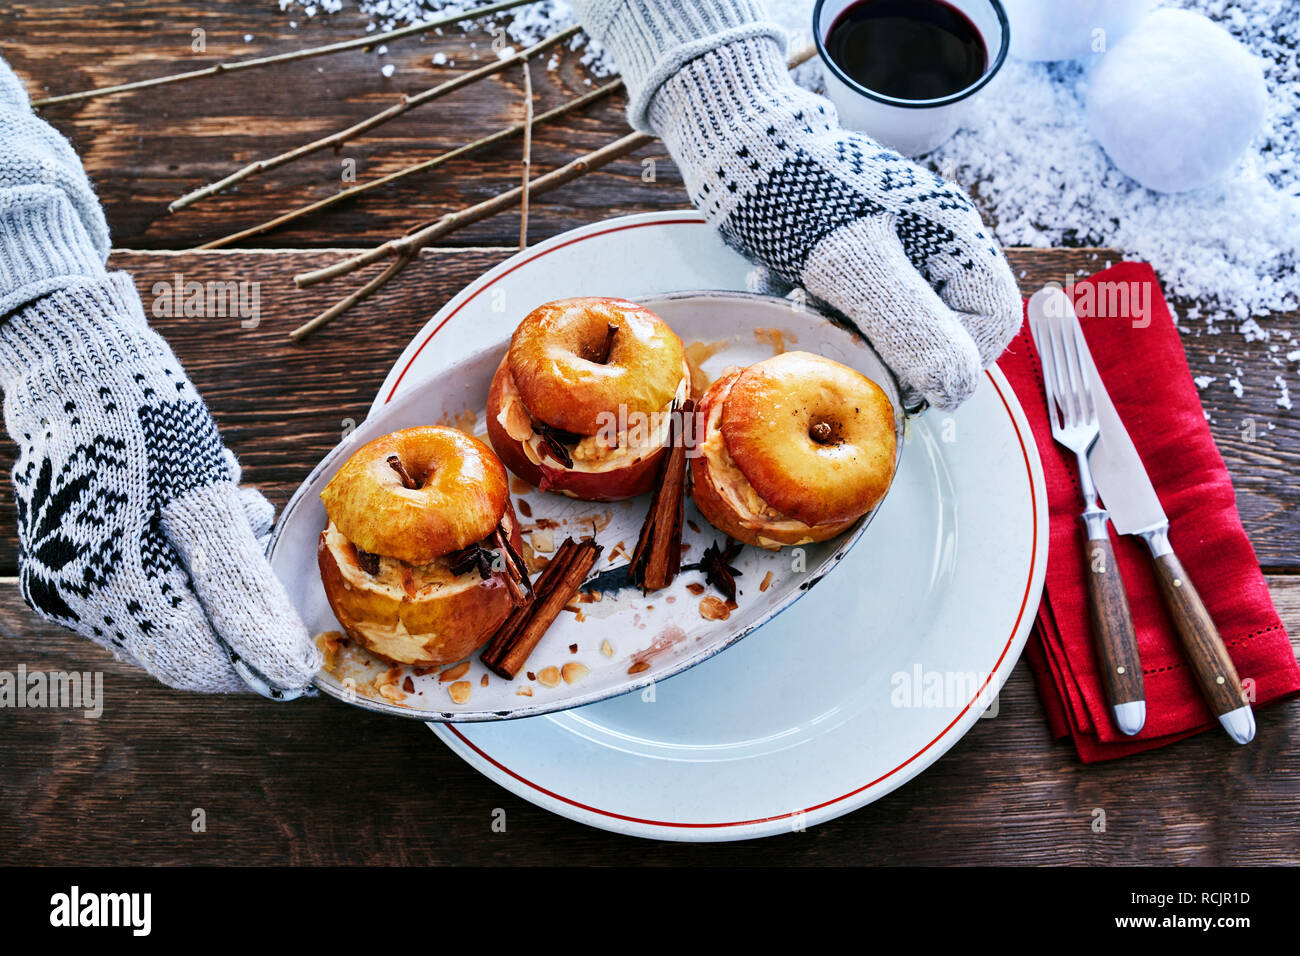 Mani guantate serve speziata cotta dessert apple con cannella su una piastra di metallo in corrispondenza di un inverno di barbecue con neve sul tavolo Foto Stock